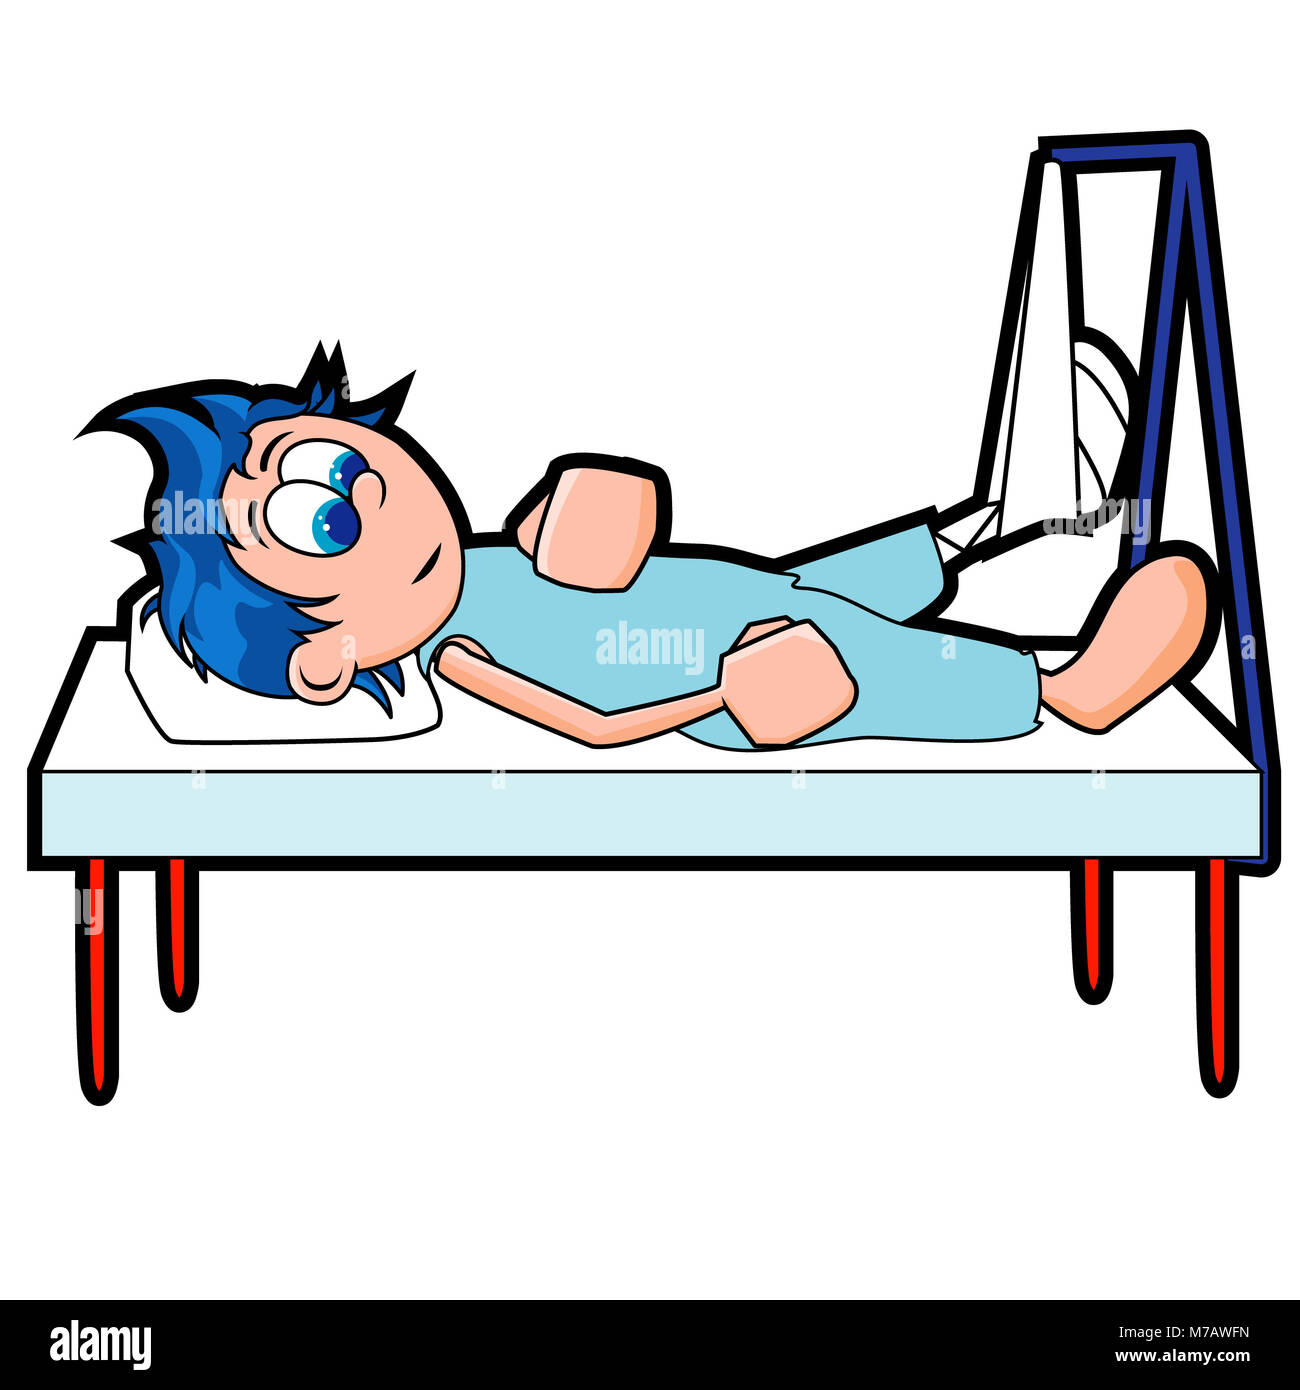 Patient allongé sur un lit d'hôpital avec sa jambe en traction Banque D'Images